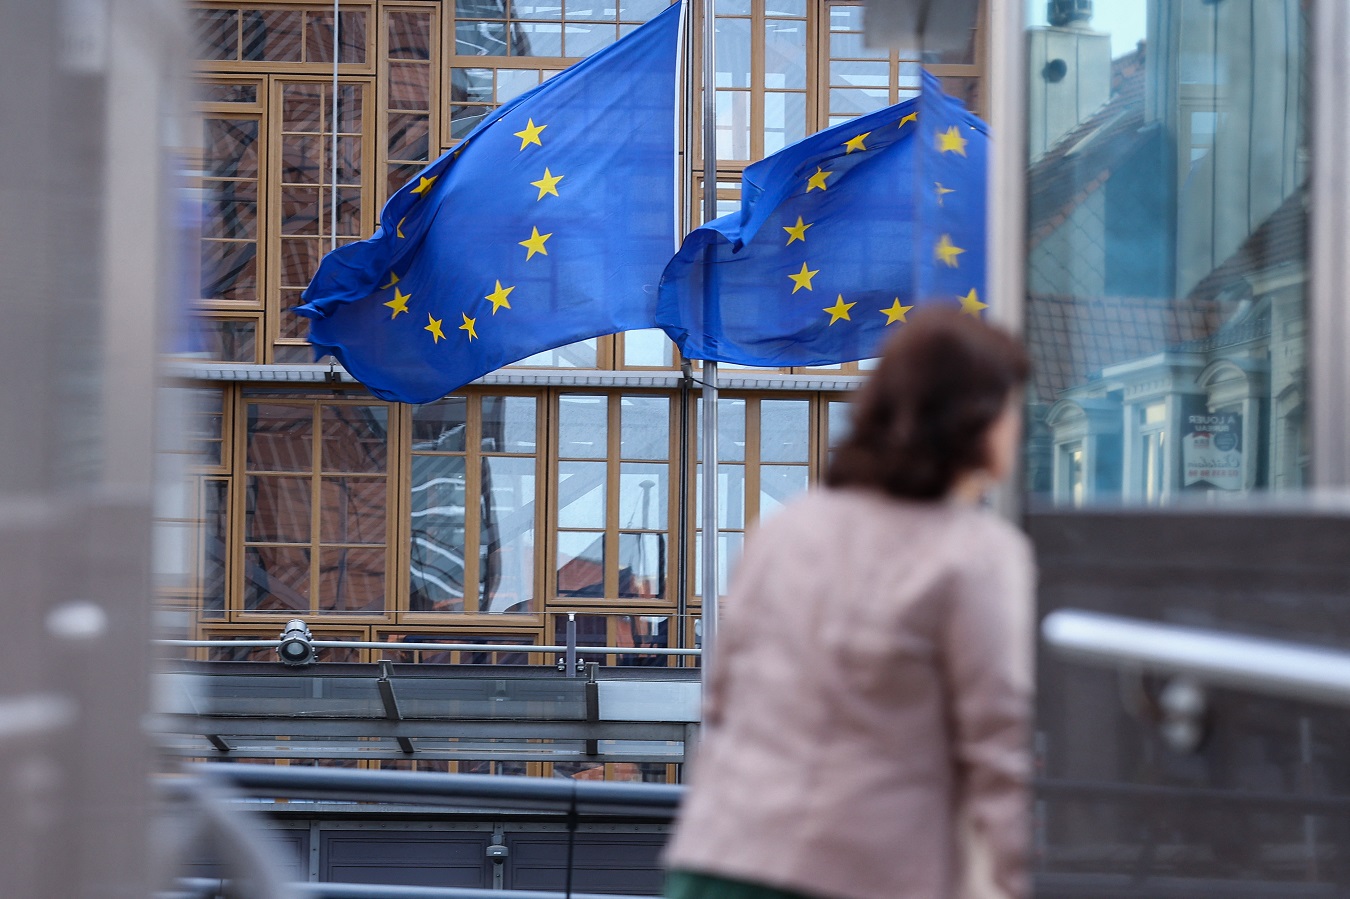 Banderas de la UE en el exterior de la sede de la Comisión Europea, en Bruselas. AFP/KENZO TRIBOUILLARD